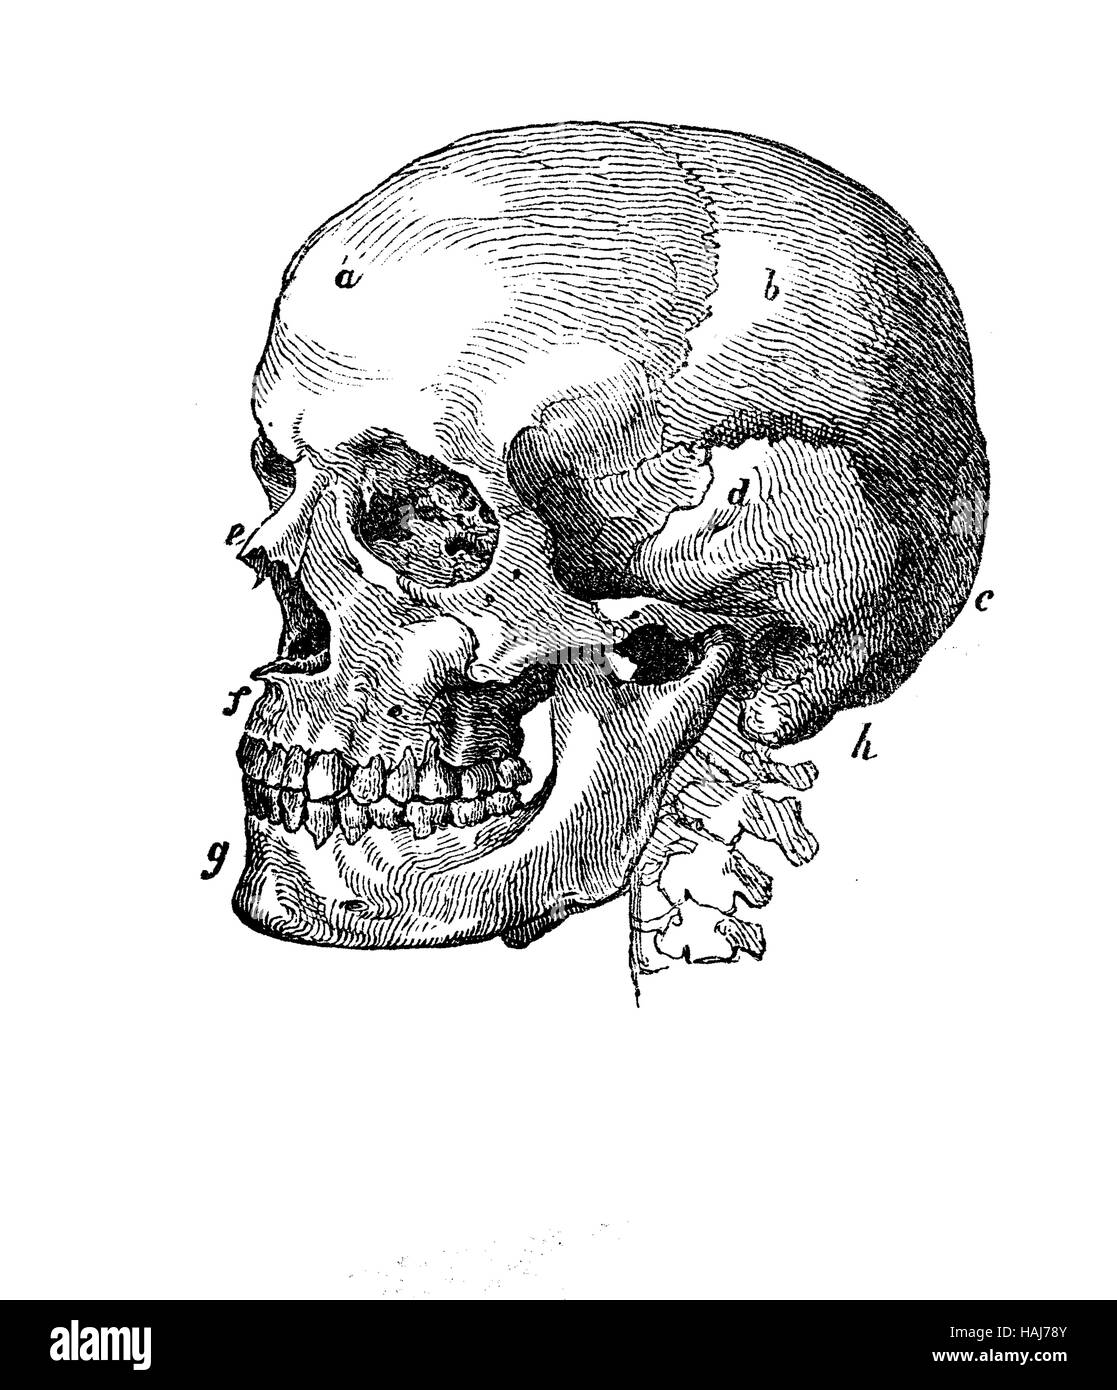 Crâne humain anatomie profil, gravure XIX siècle Banque D'Images